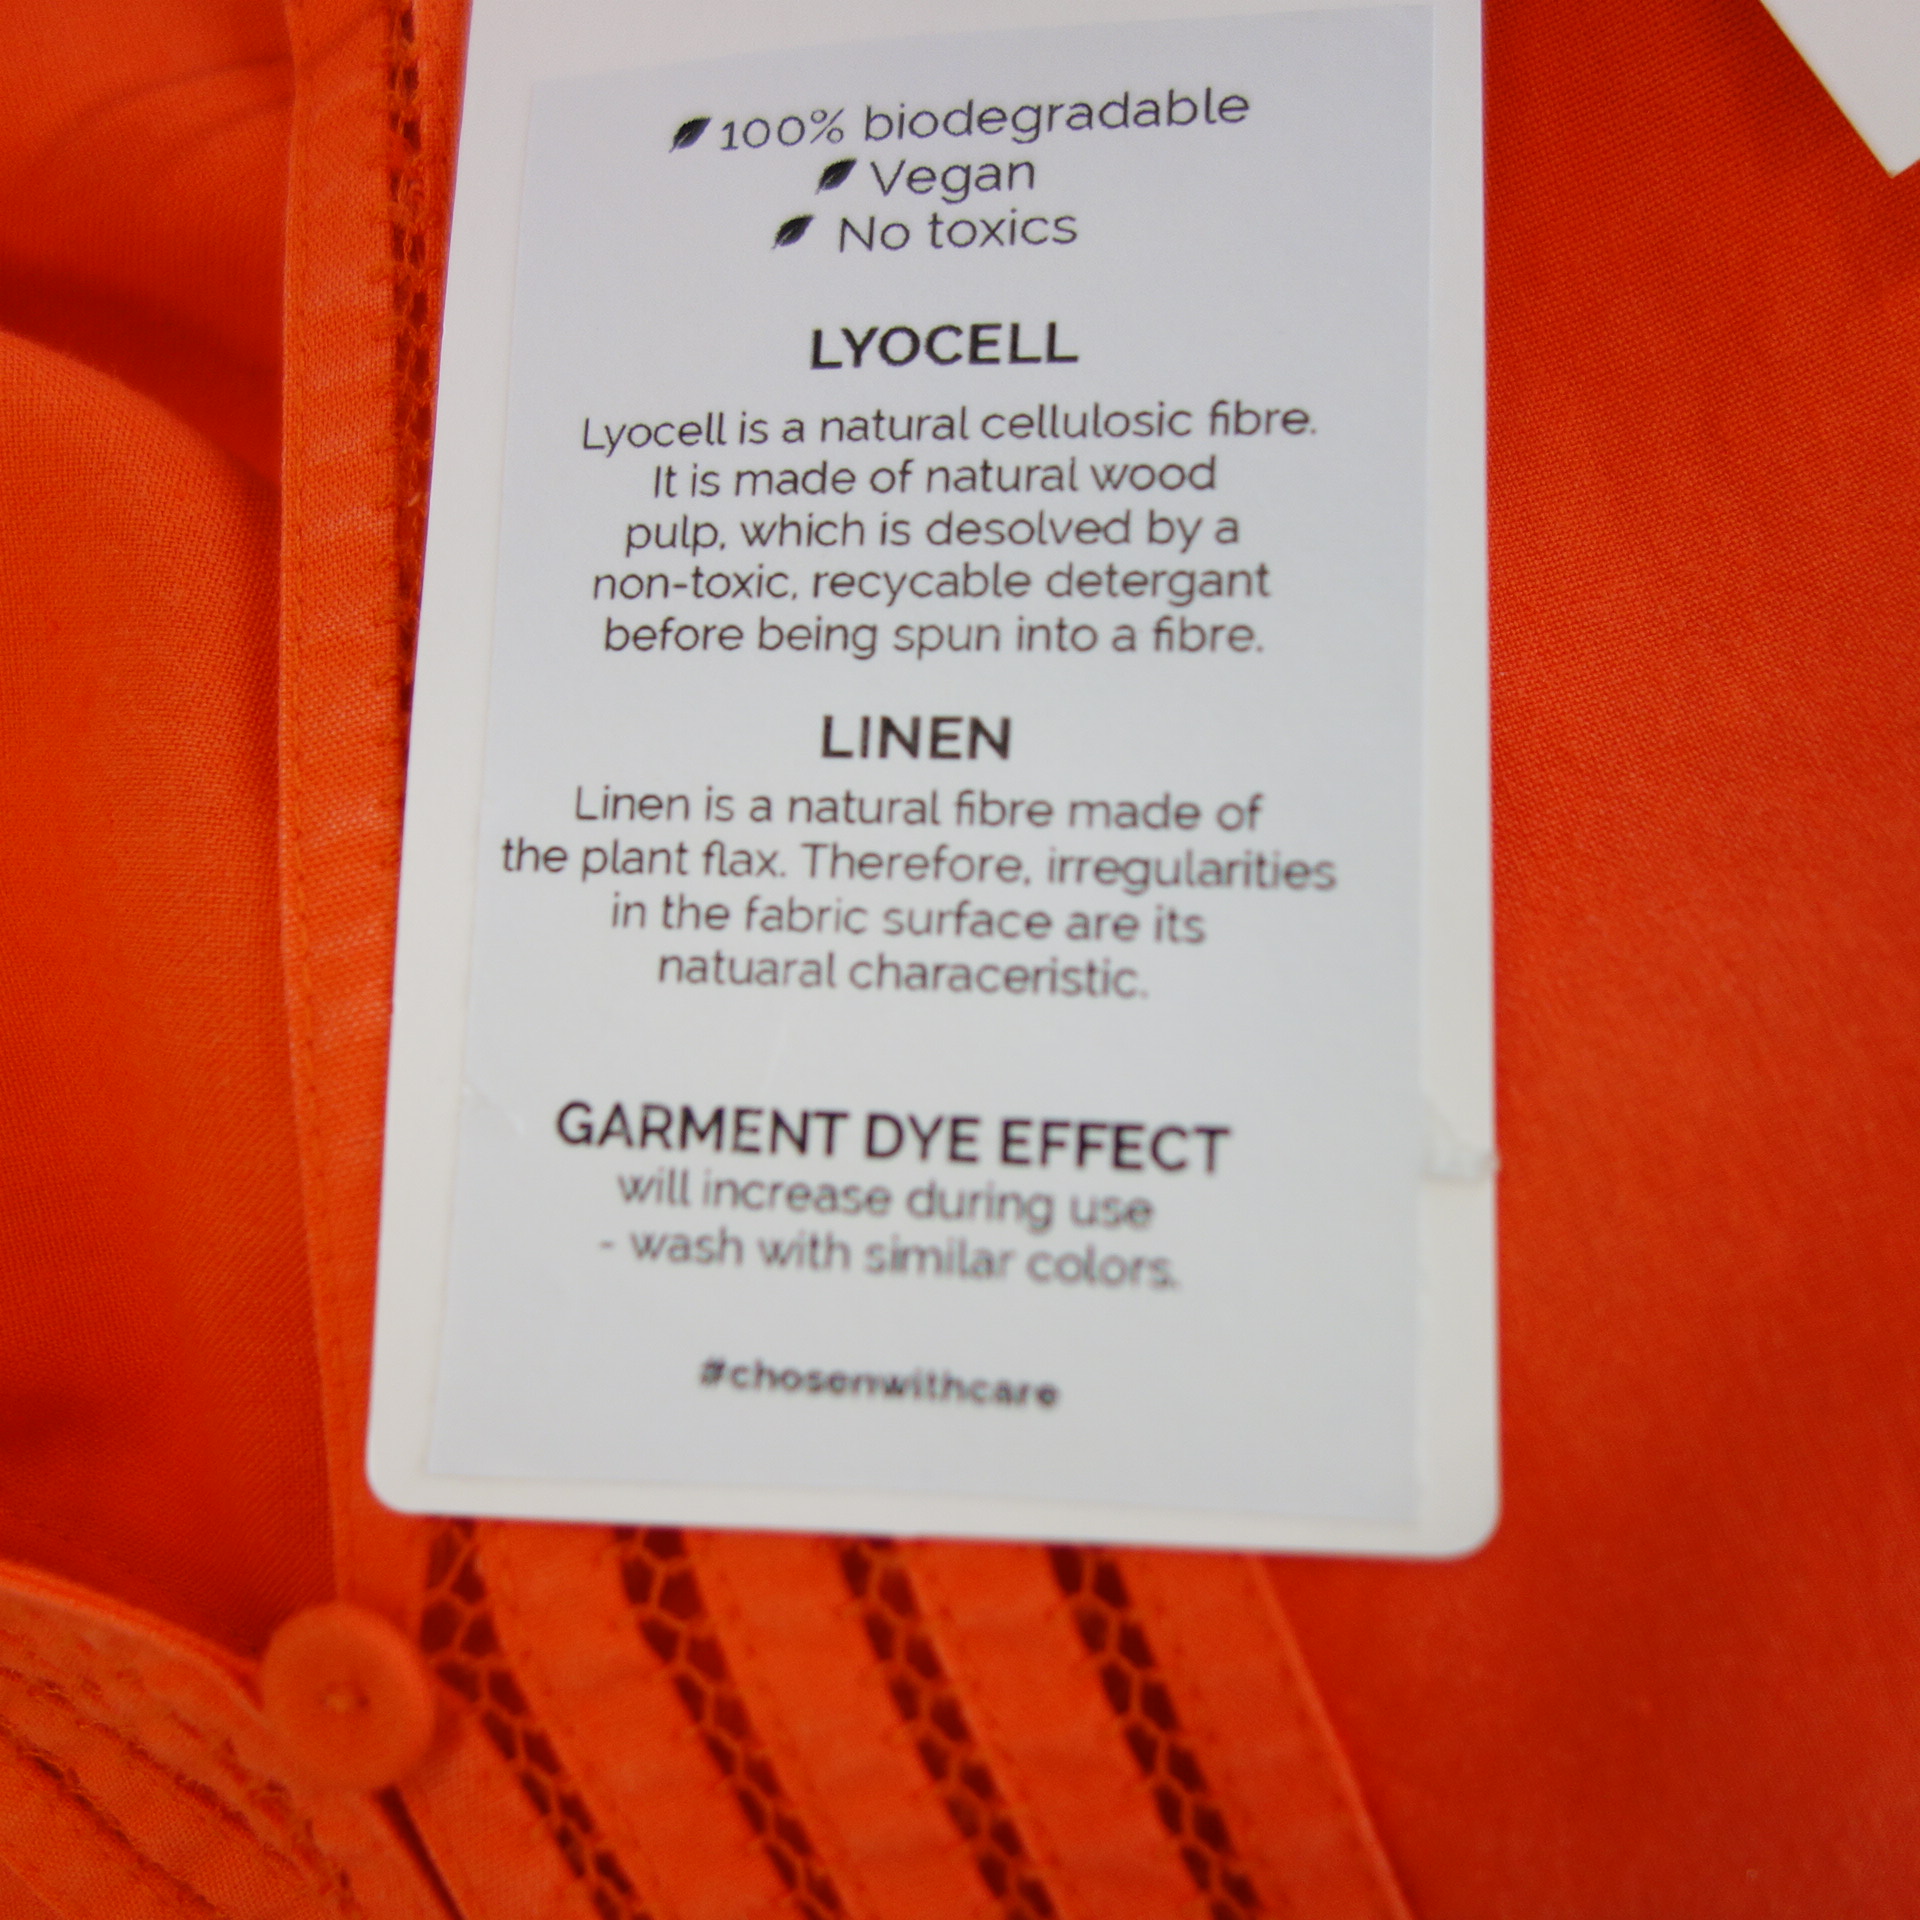 IVI Damen Bluse Tunika Hemd Oberteil Orange mit Leinen Häkelspitze